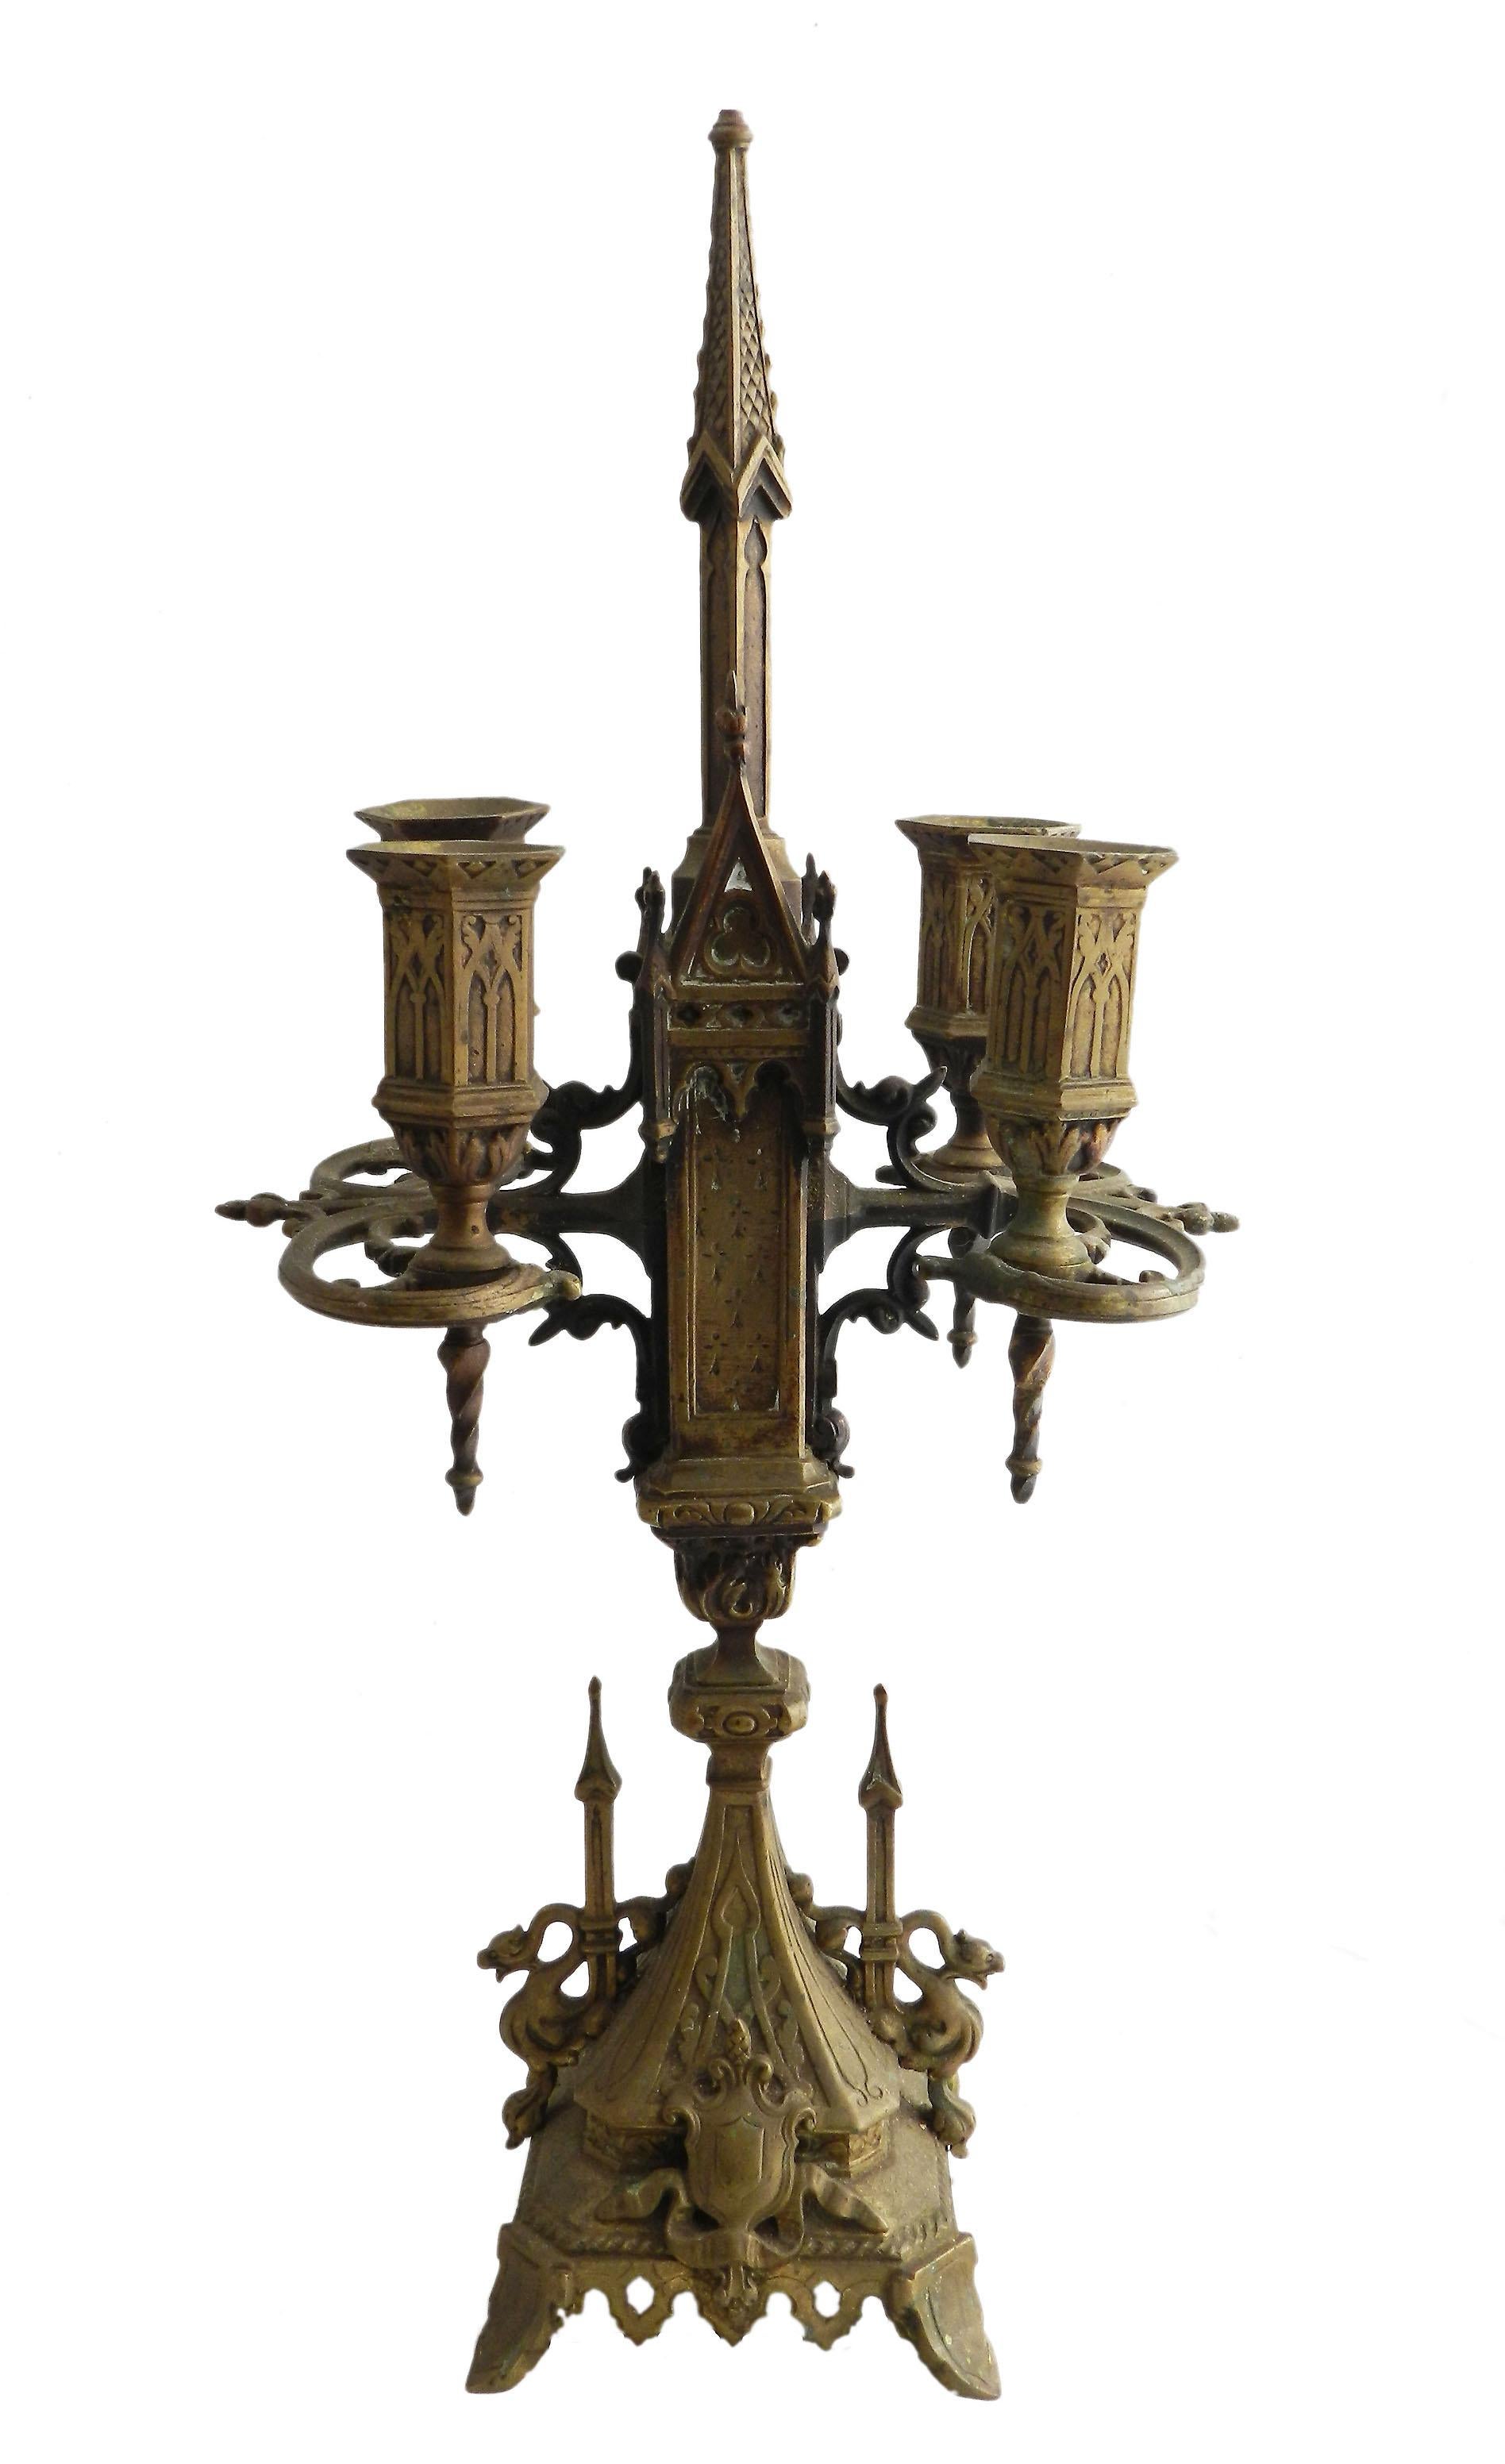 Gotischer Bronzeleuchter, 19. Jahrhundert, Französisch
Vier Kerzen
Guter antiker Zustand mit einigen Gebrauchs- und Altersspuren, kaum zu bemerkender winziger, unmöglich zu bemerkender kleiner Schaden an der Spitze,
dies wird leicht zu reinigen